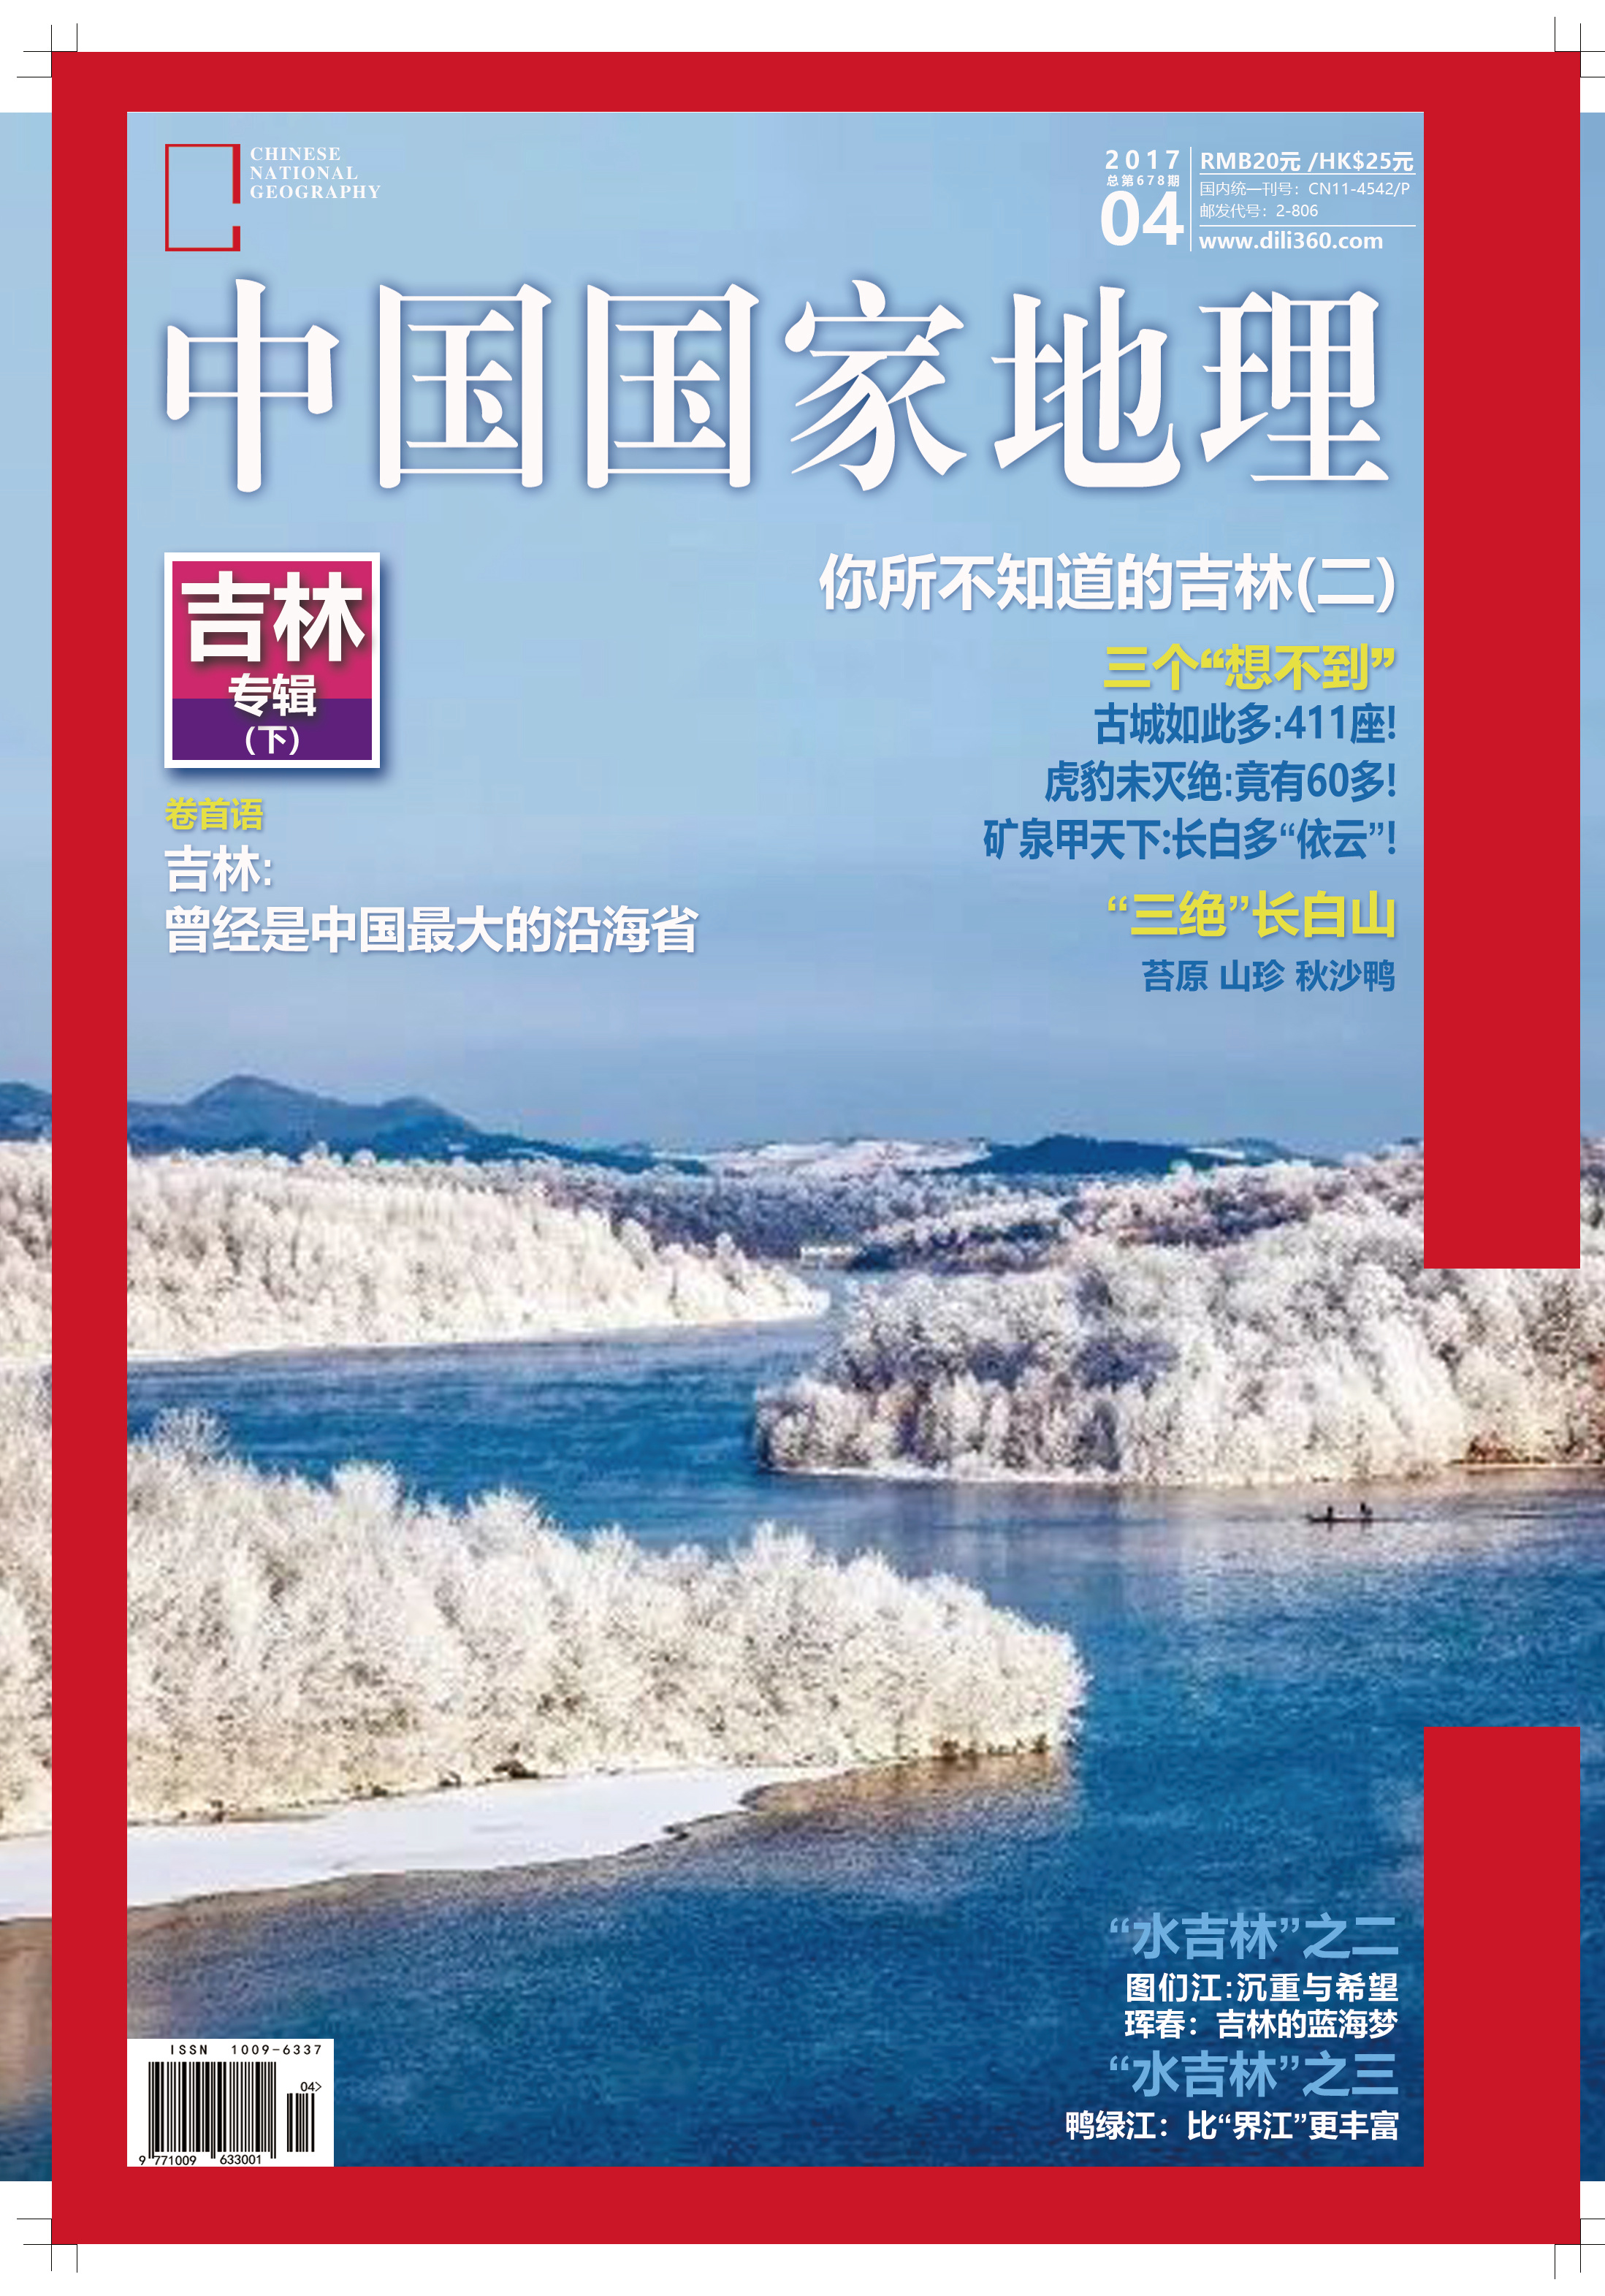 《中国国家地理》杂志封面临摹